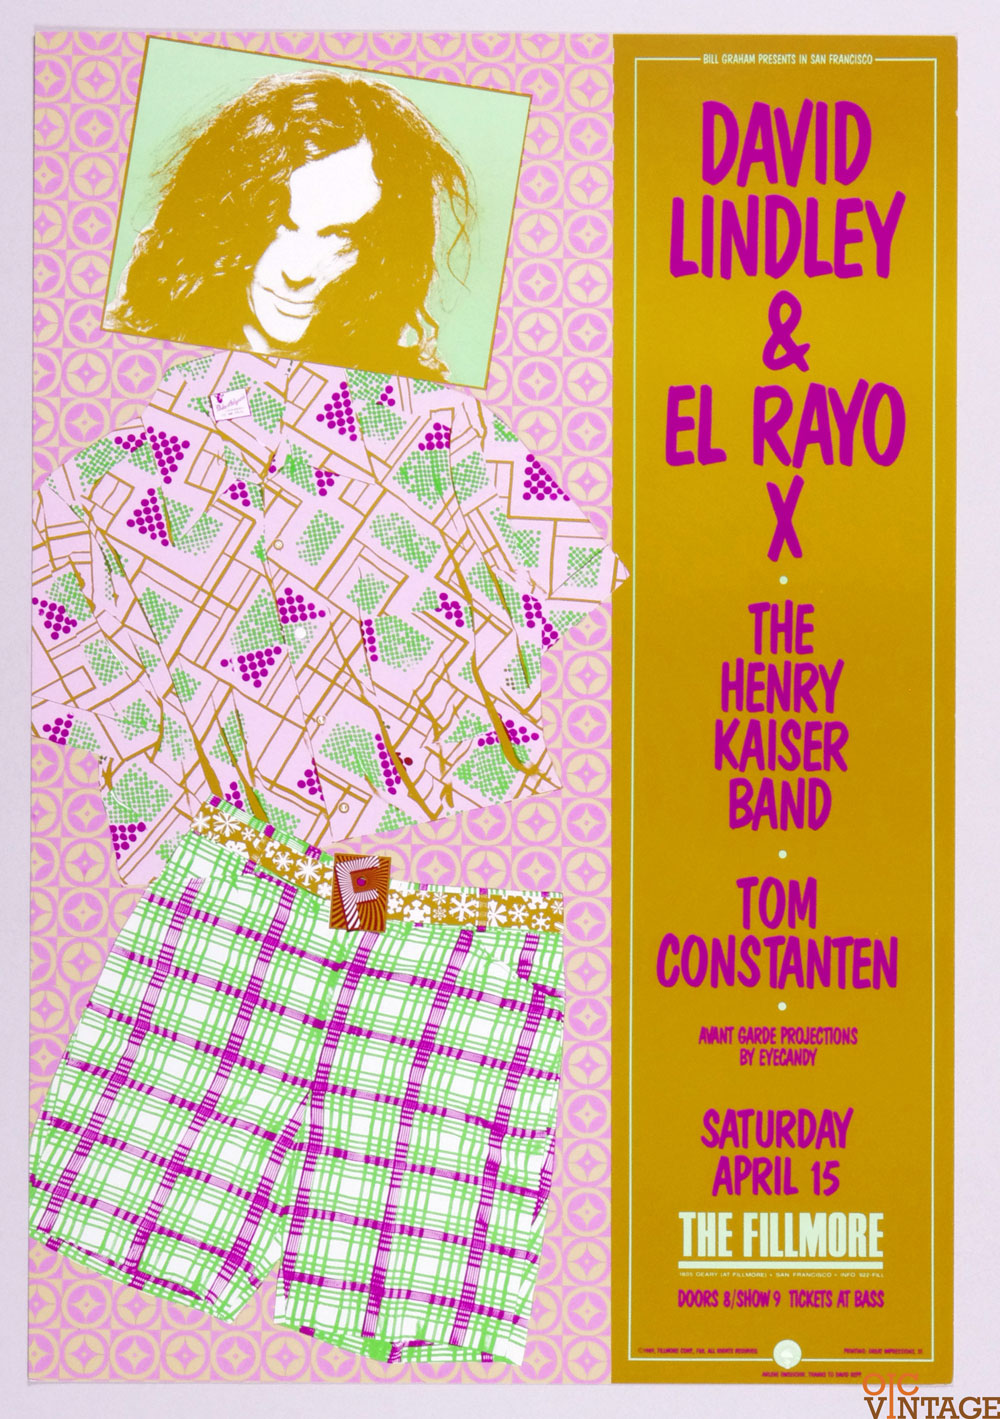 David Lindley and El Rayo X Poster 1989 Apr 15 New Fillmore San Francisco